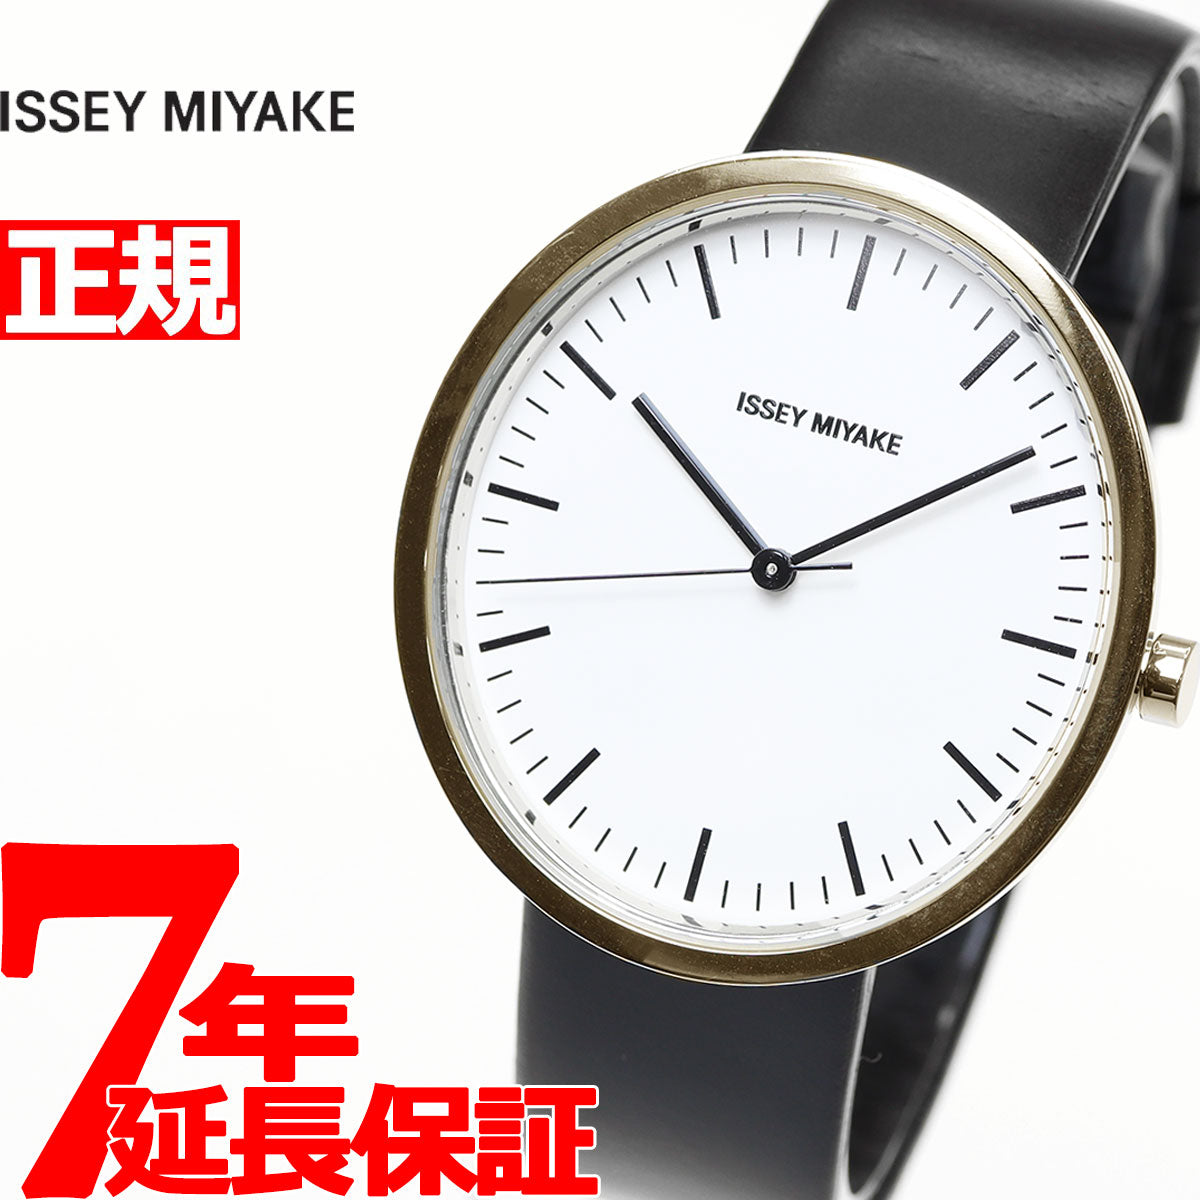 イッセイミヤケ ISSEY MIYAKE 腕時計 メンズ レディース ELLIPSE エリプス ウオッチプロジェクト20周年 限定モデル  深澤直人デザイン NYAP701